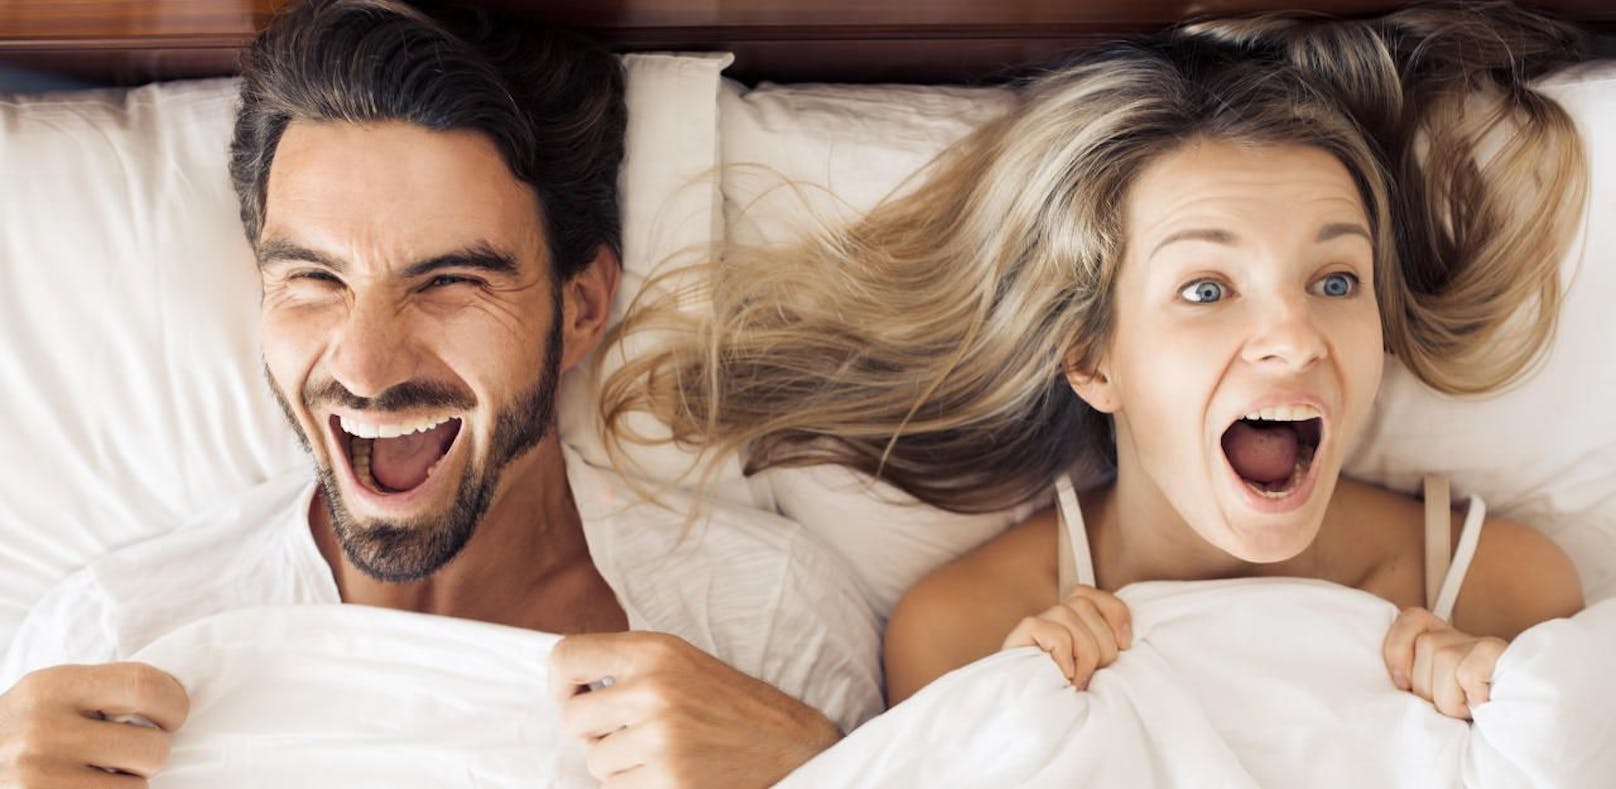 Humor im Bett wirkt sich positiv auf den Sex aus.